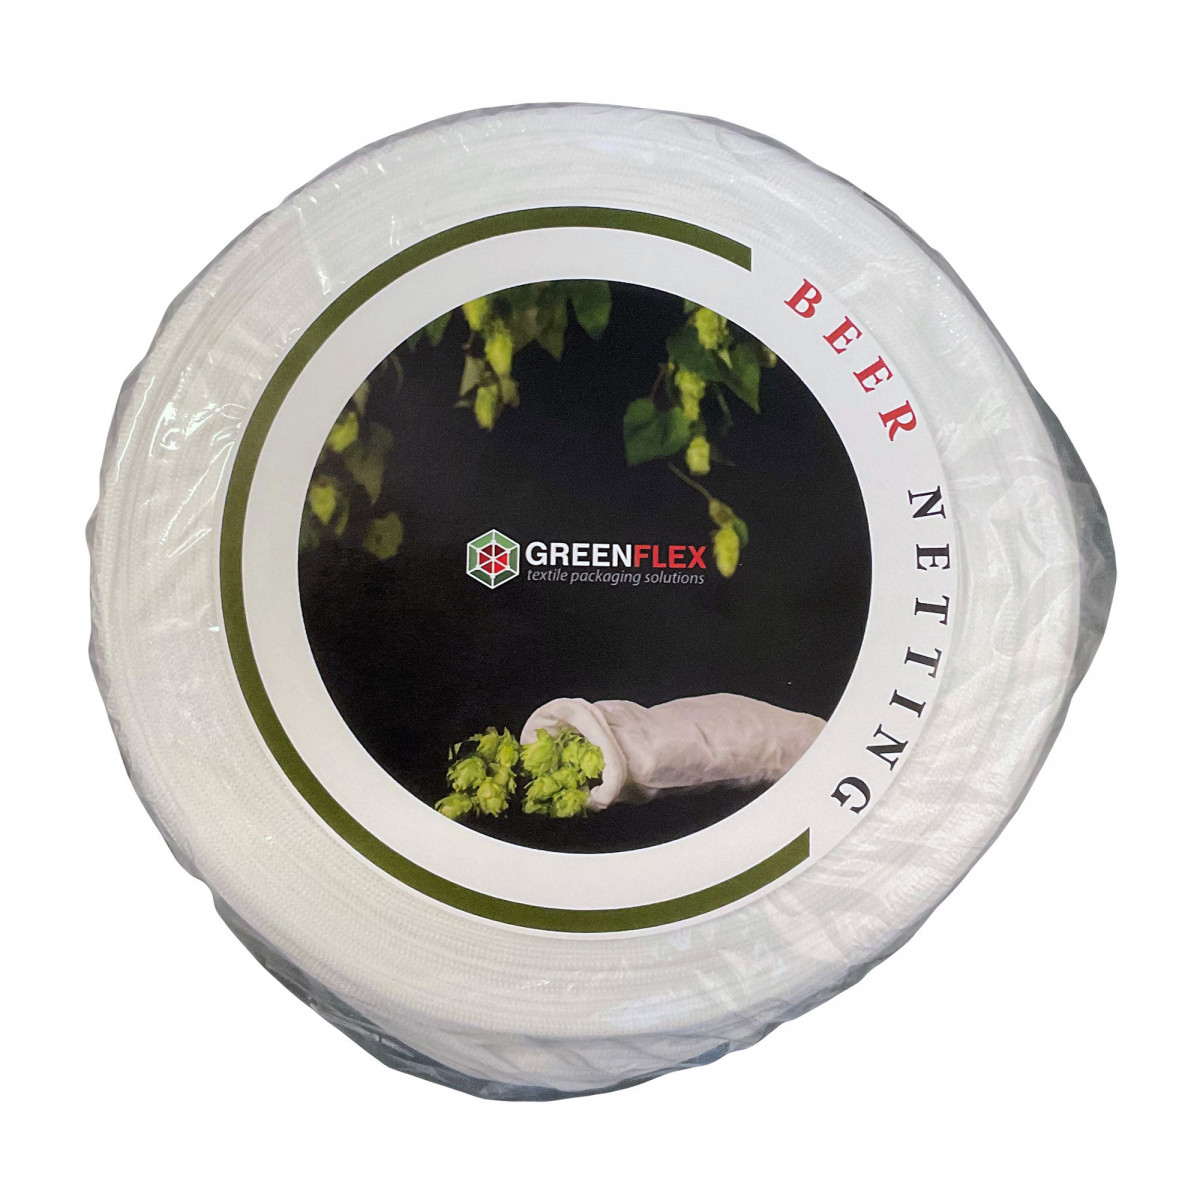 Greenflex Beer Netting - Filternetz für Hopfen und Kräuter - 50 m